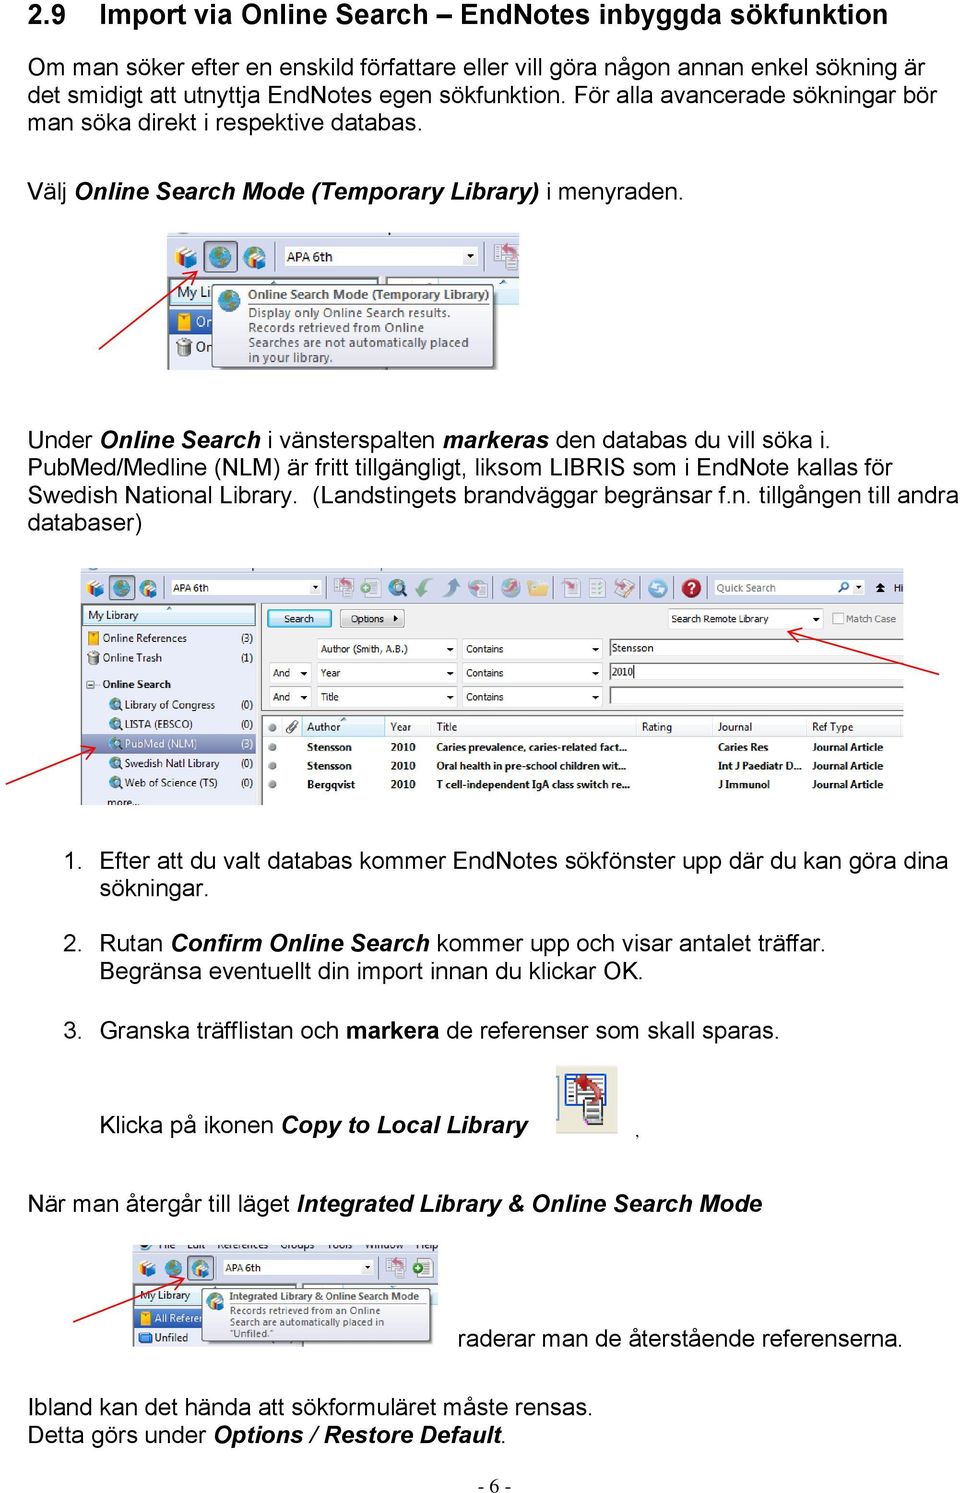 Under Online Search i vänsterspalten markeras den databas du vill söka i. PubMed/Medline (NLM) är fritt tillgängligt, liksom LIBRIS som i EndNote kallas för Swedish National Library.